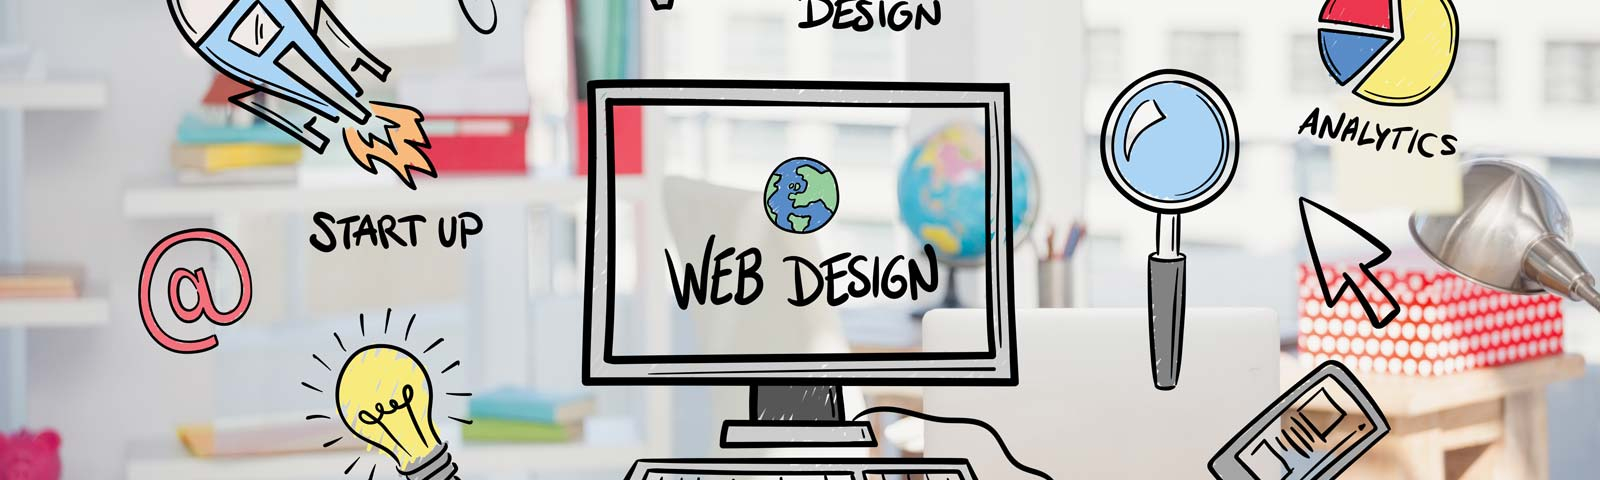 ¿Qué ofrece el diseño web?